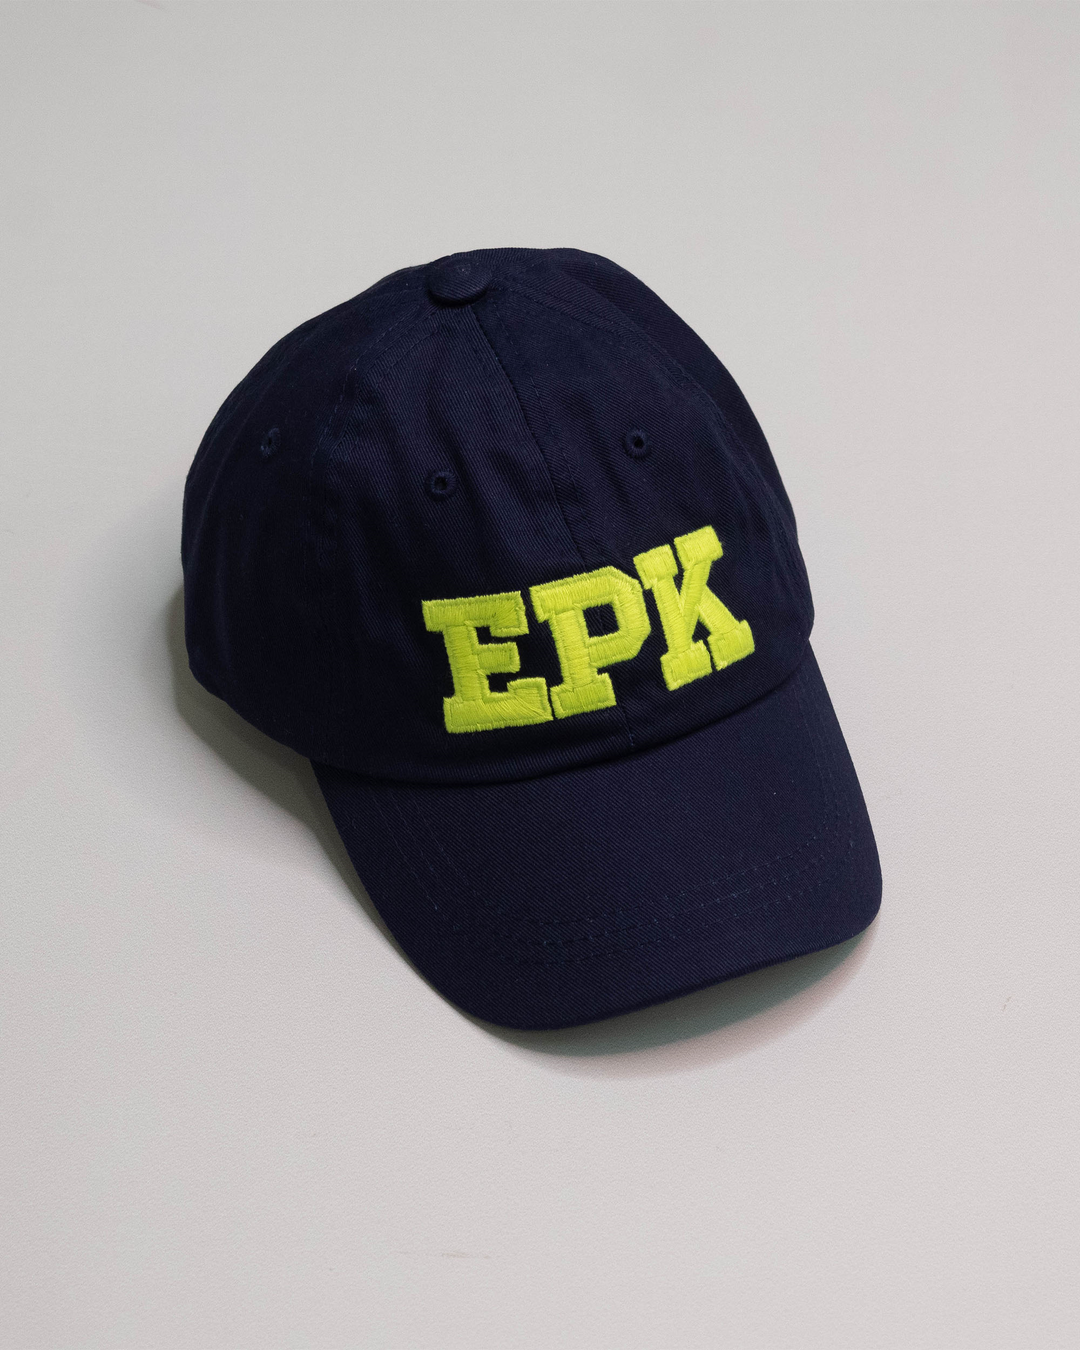 Gorra azul oscuro con logo EPK